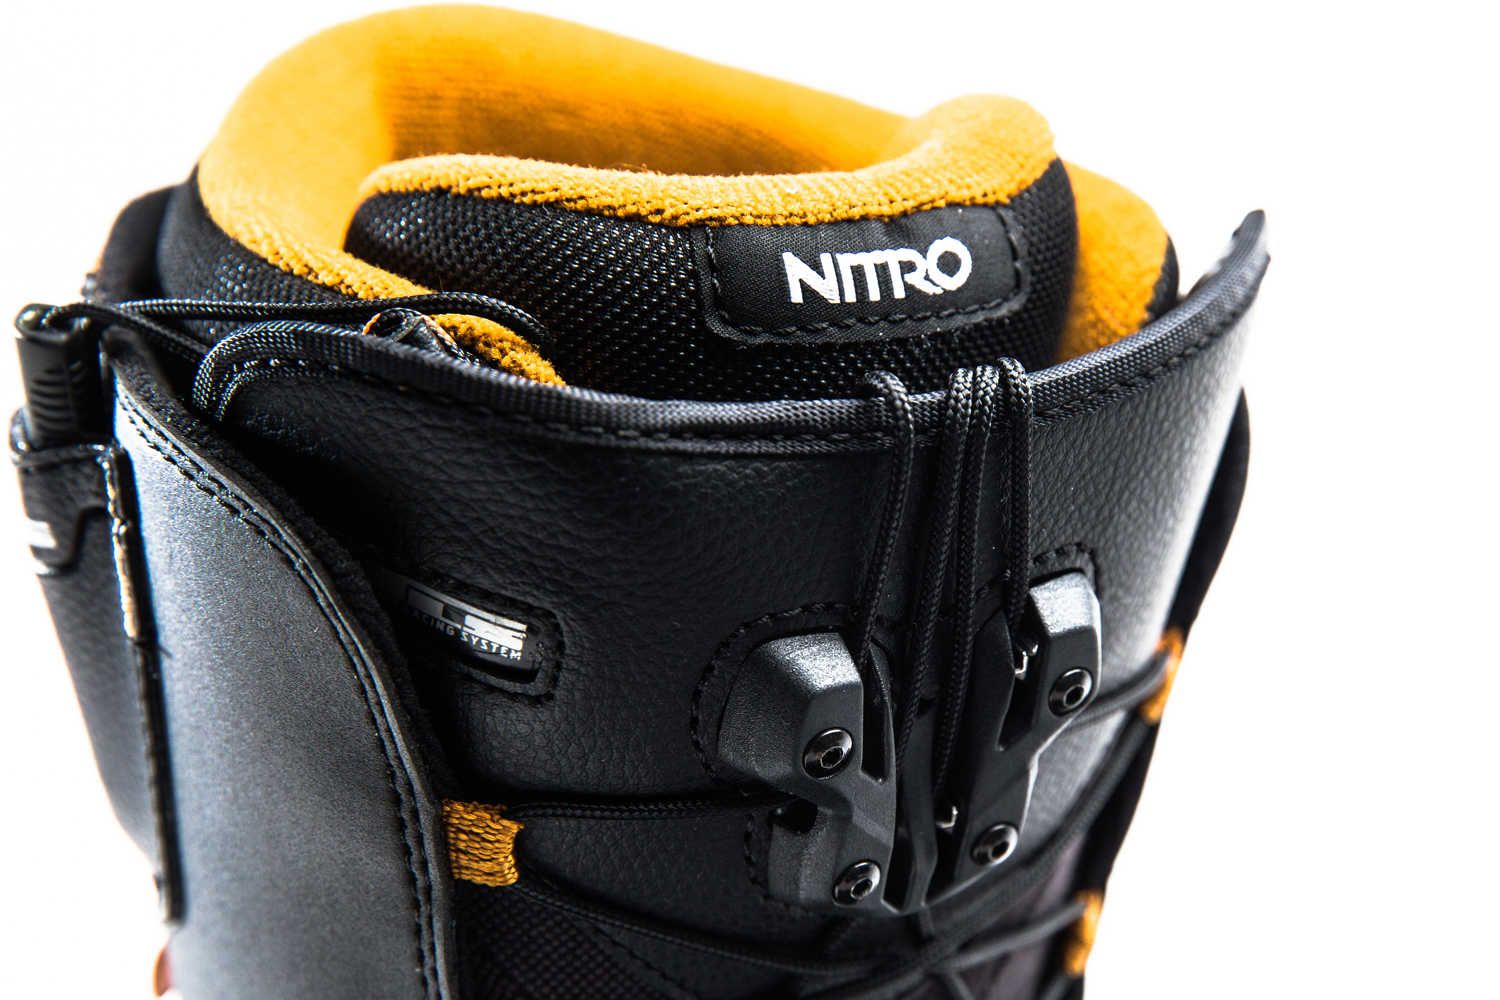 boots de snow nitro thunder 2018 